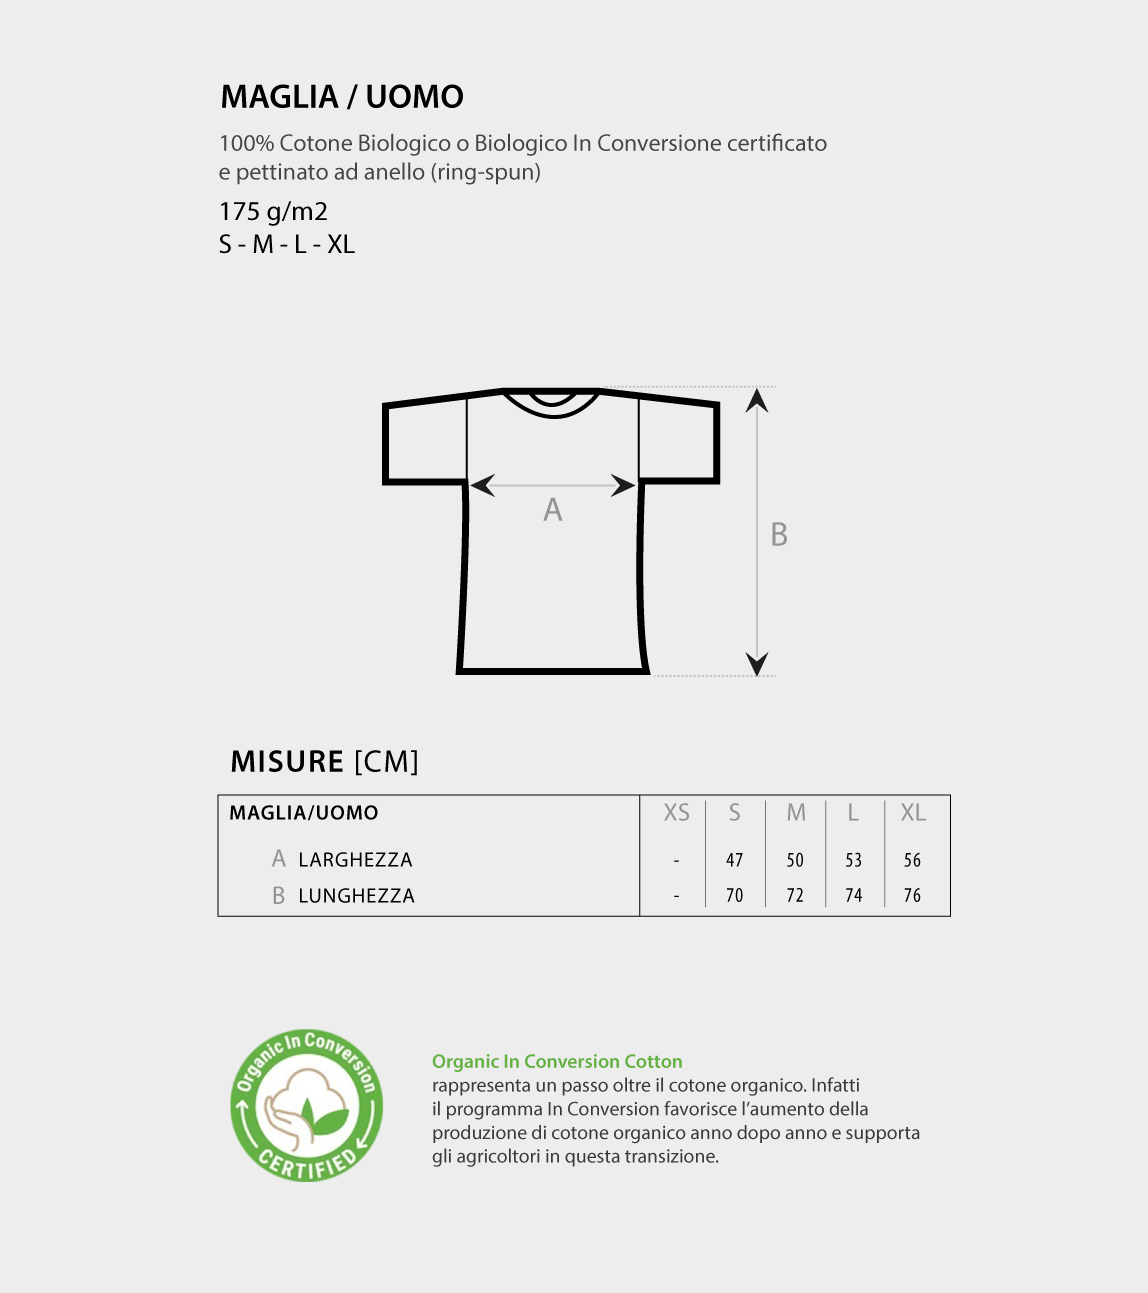 T-Shirt Verde Uomo - Logo Football Player